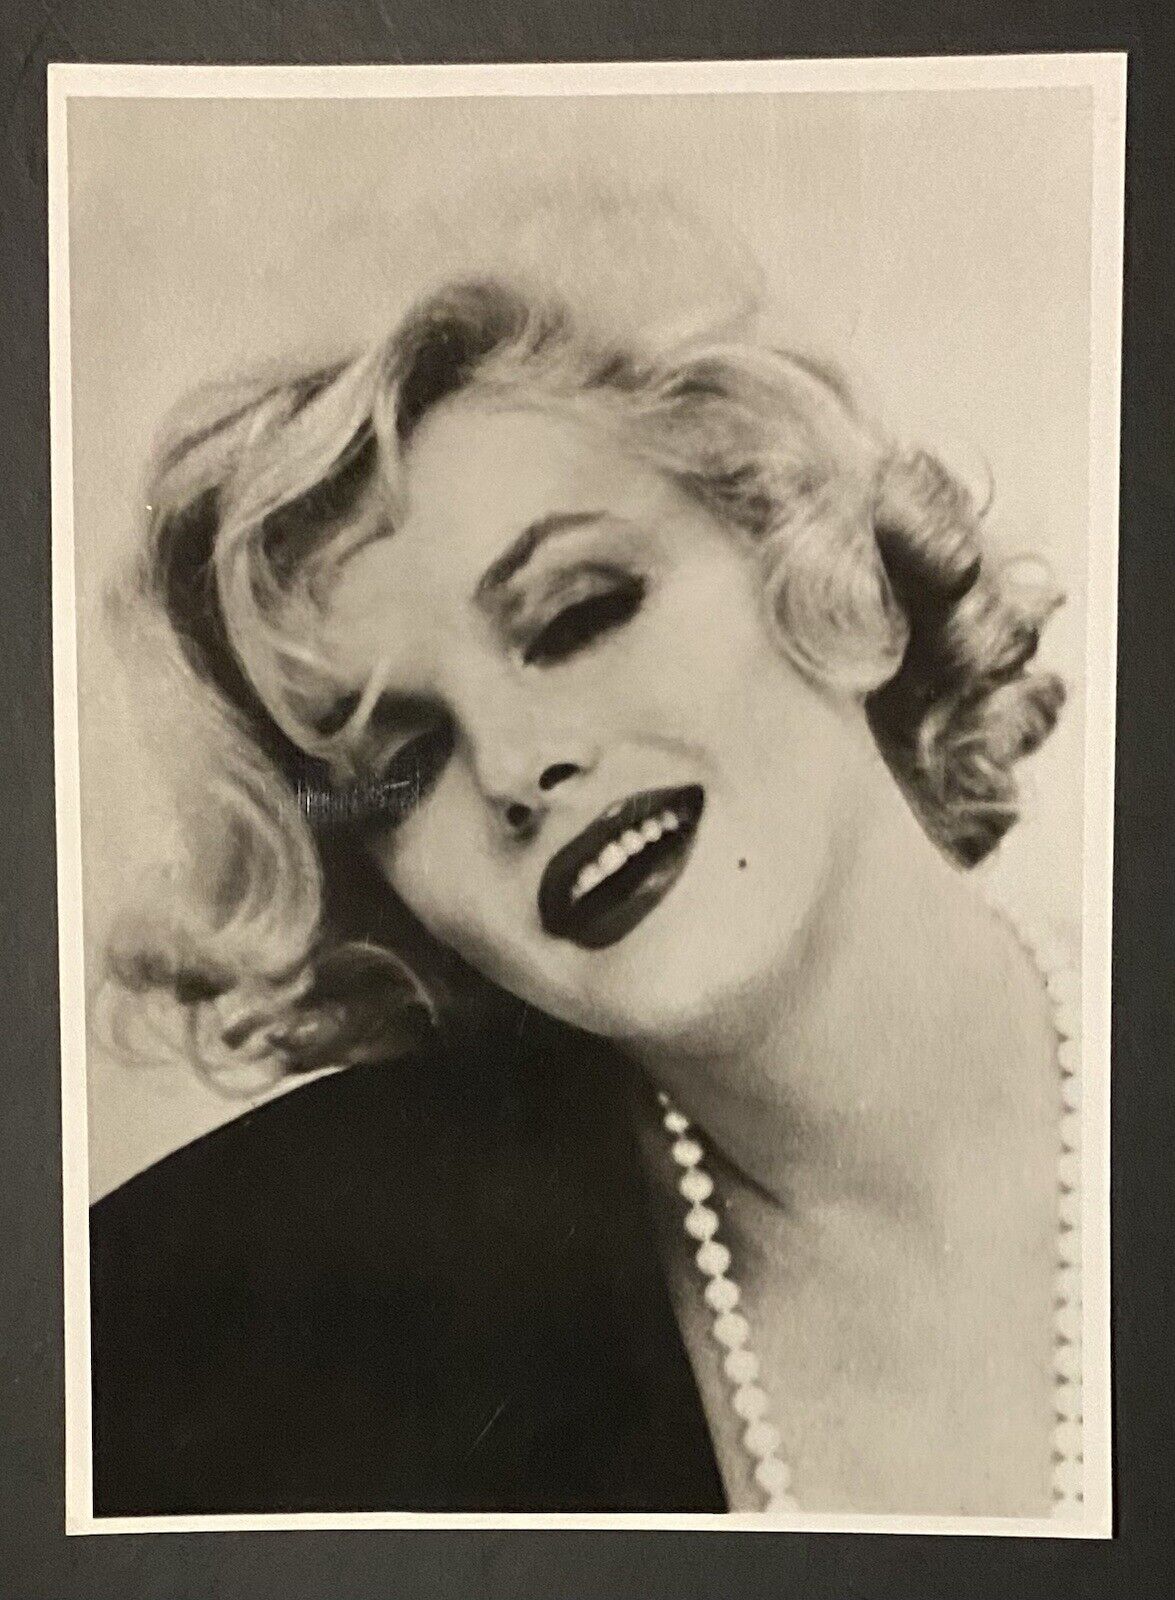 1959 Marilyn Monroe Original Photo Like It Hot Still Publicity